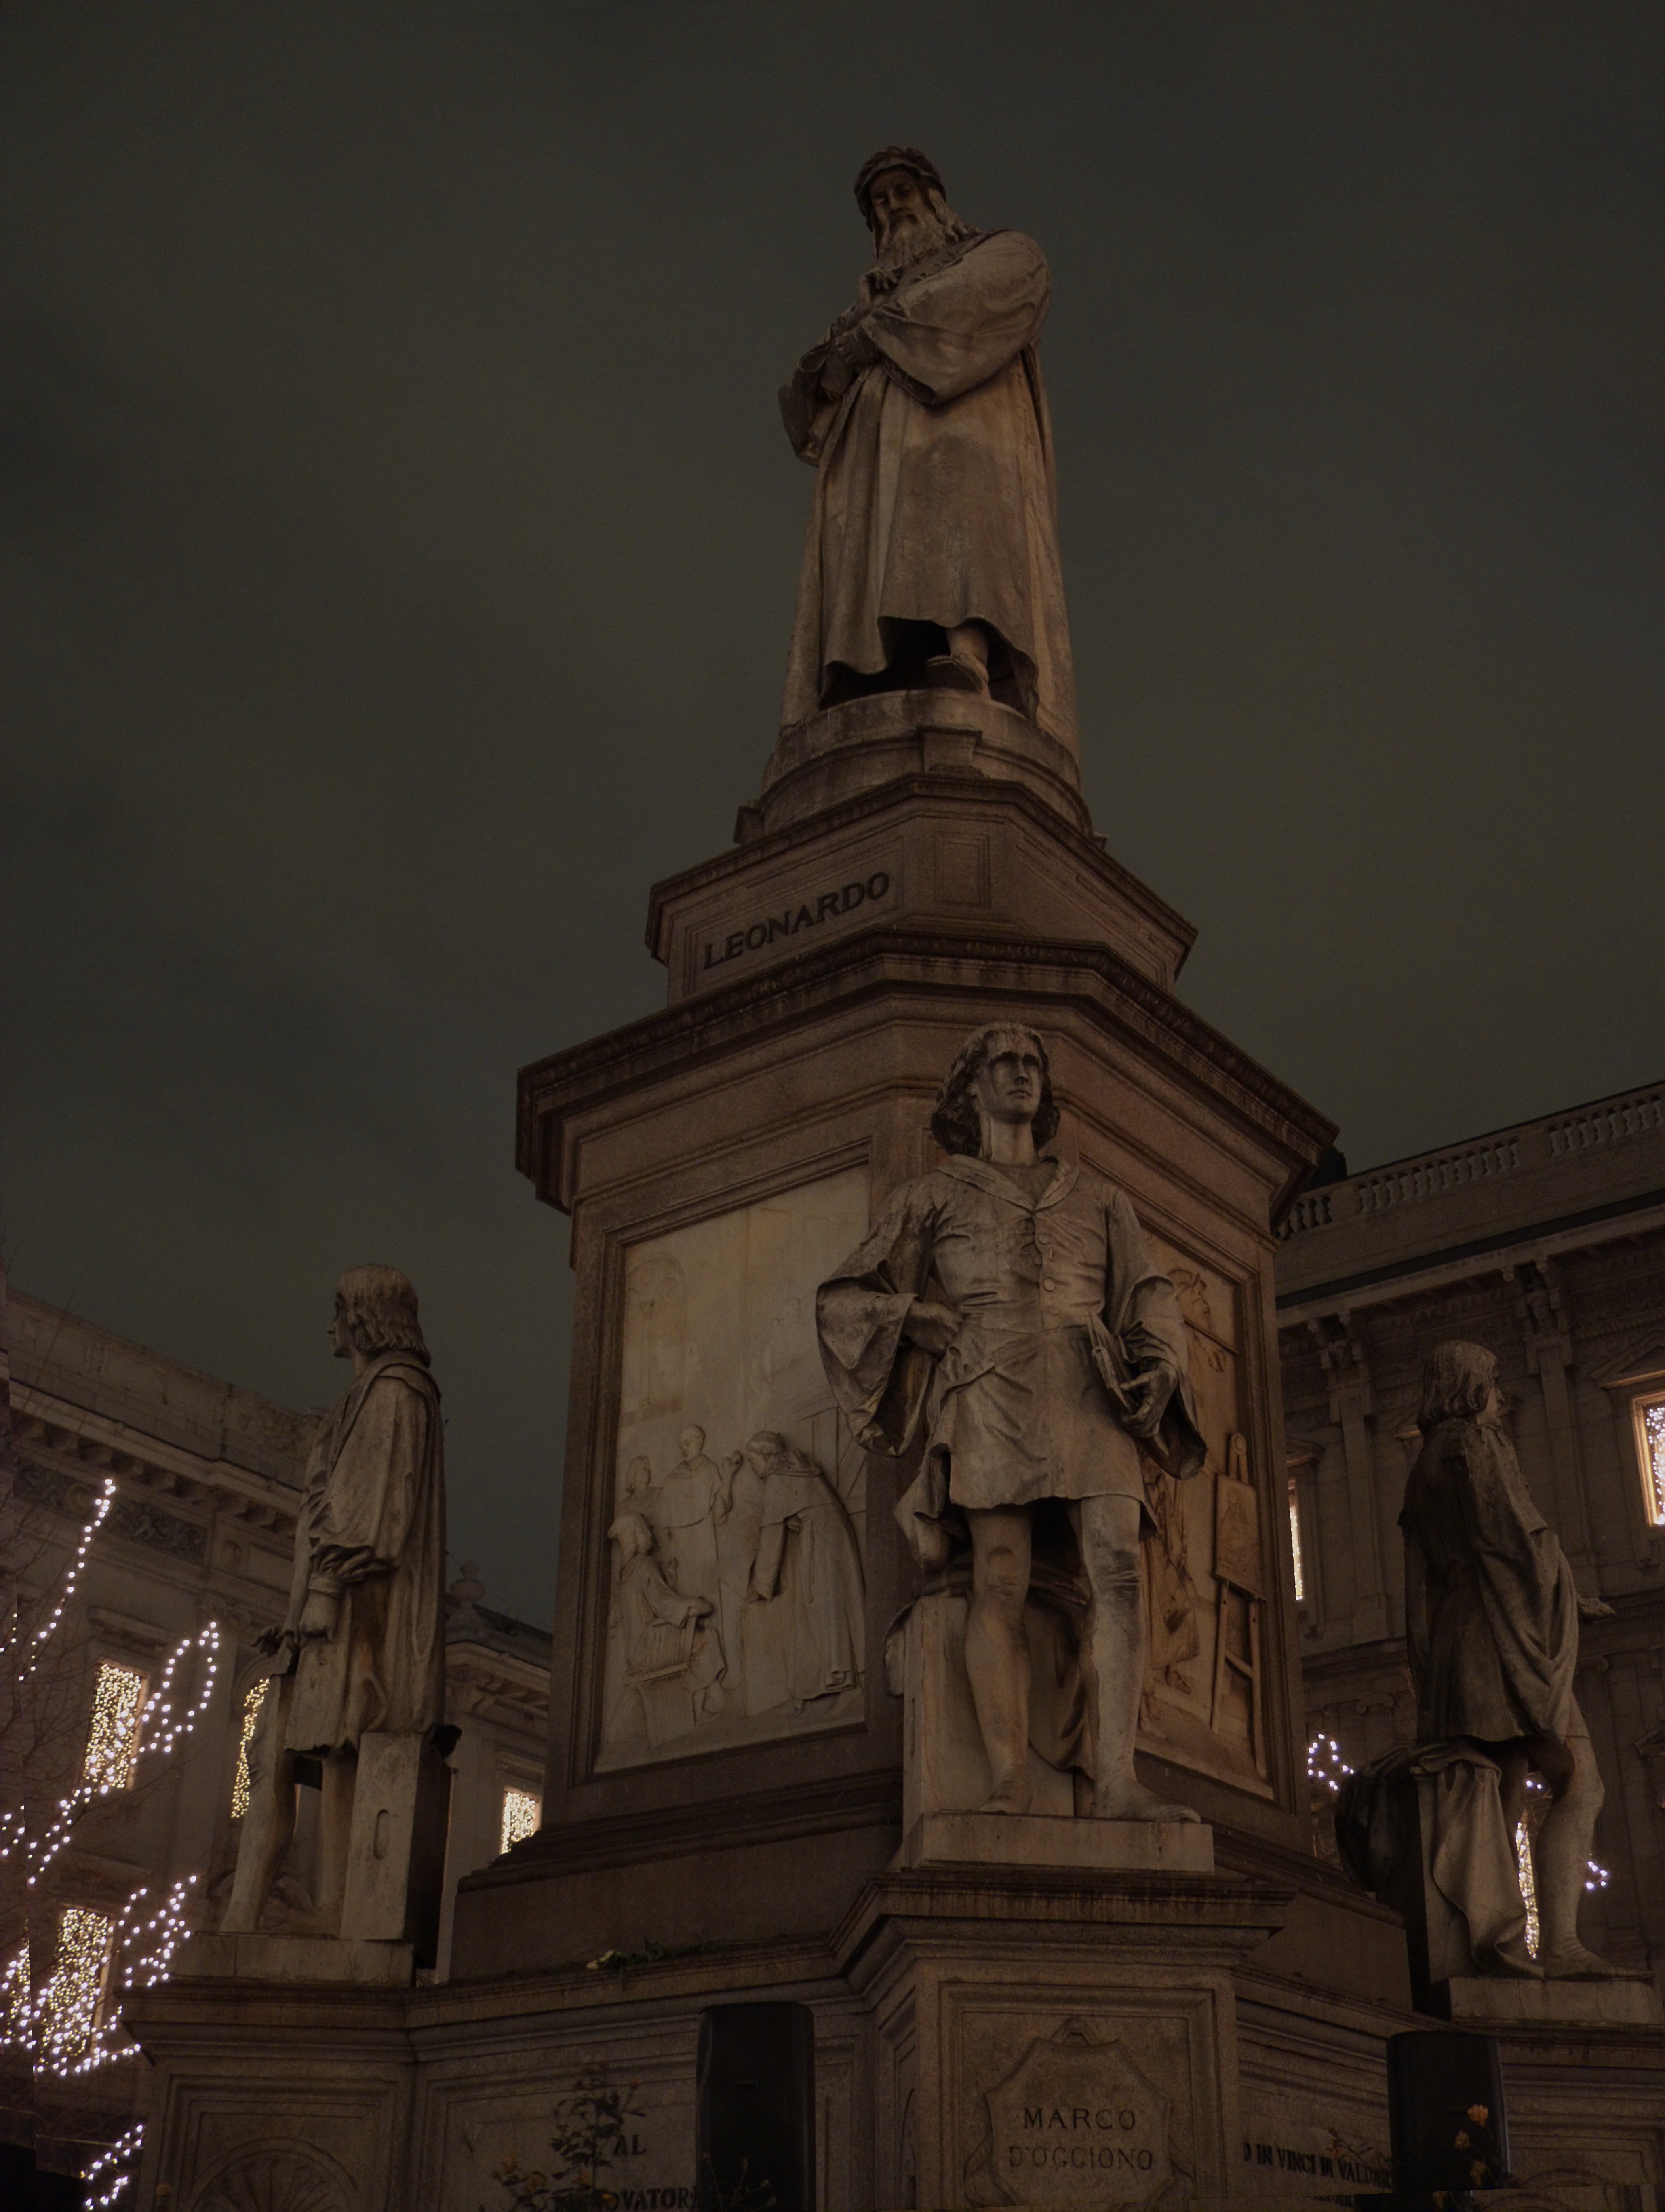 Milano: Statua di Leonardo da Vinci in Piazza della Scala in notturna - Milano